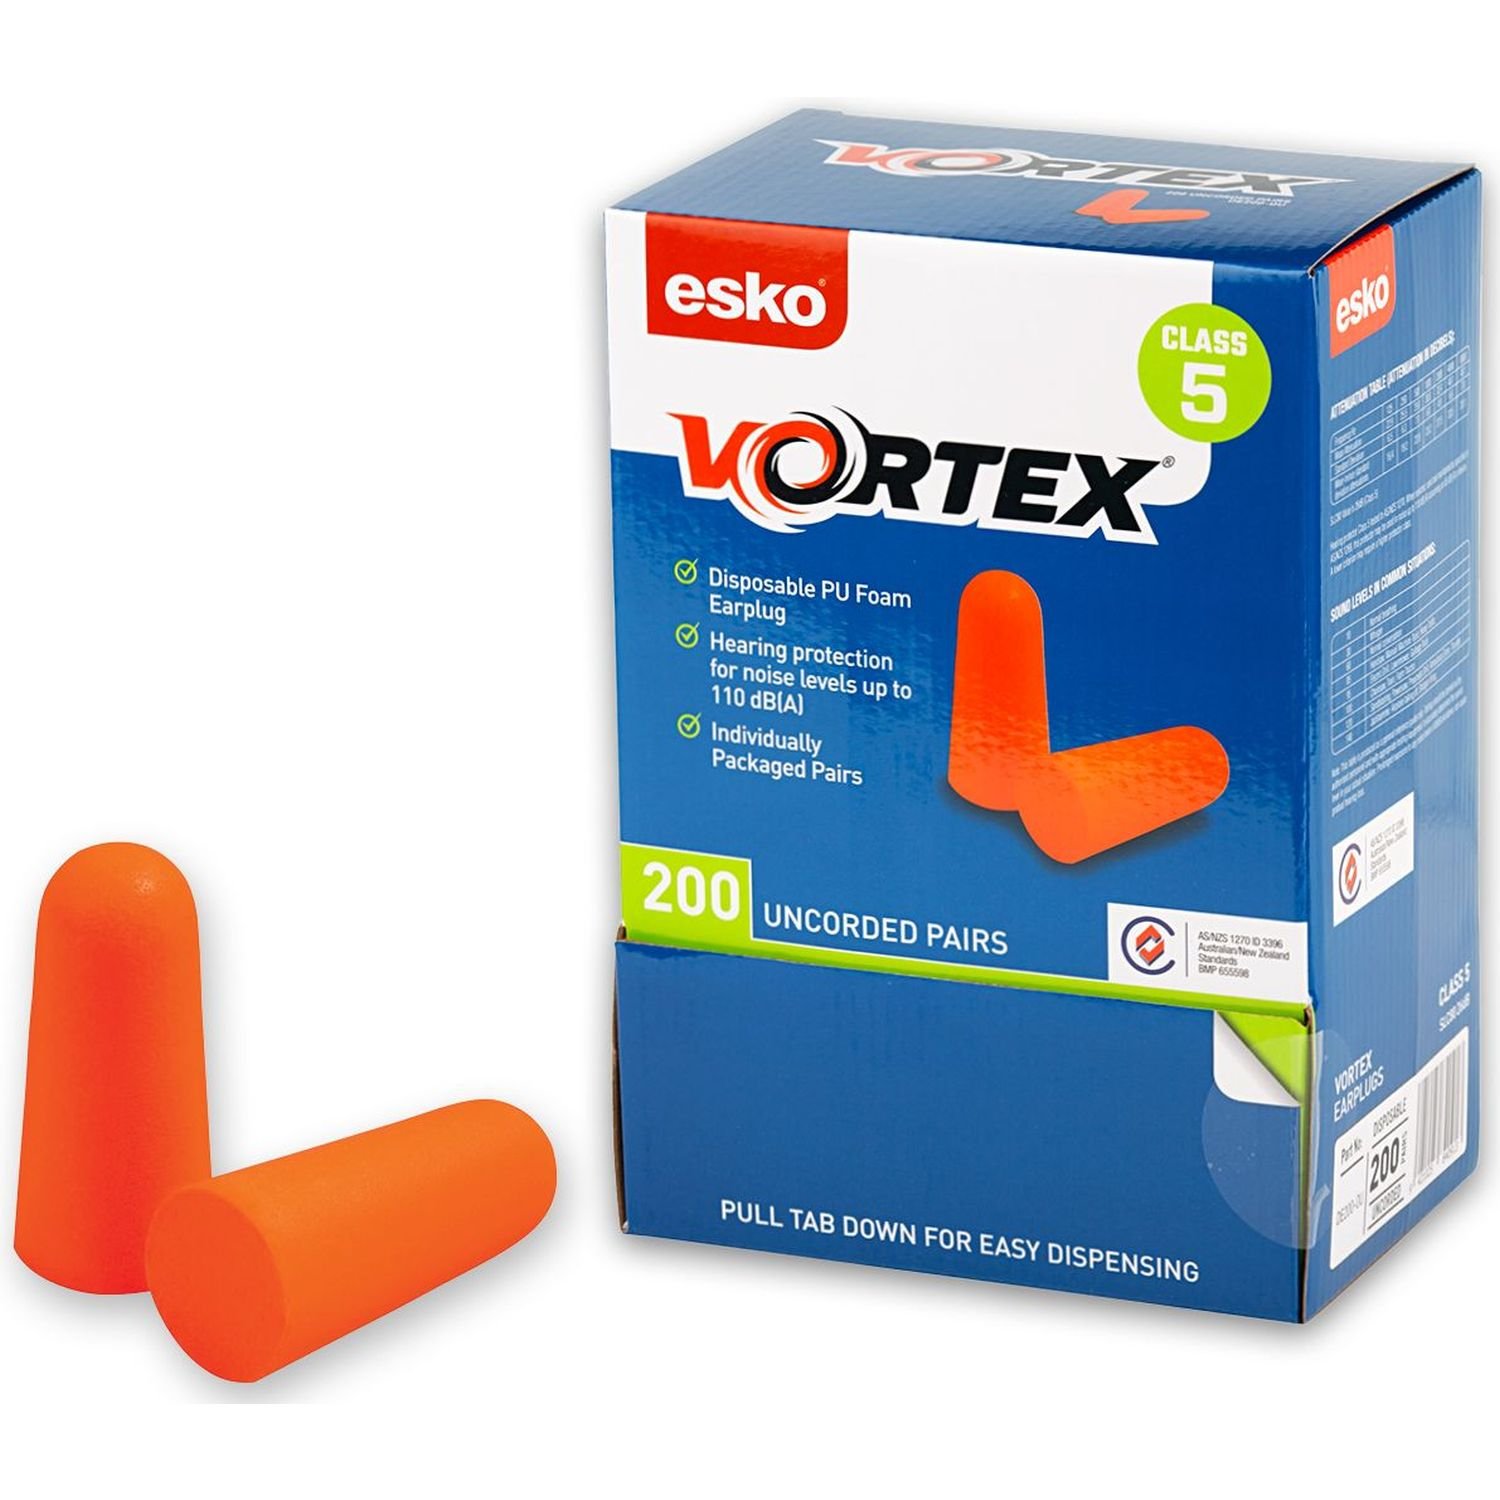 Esko Vortex Foam Earplug Box 200 Pairs